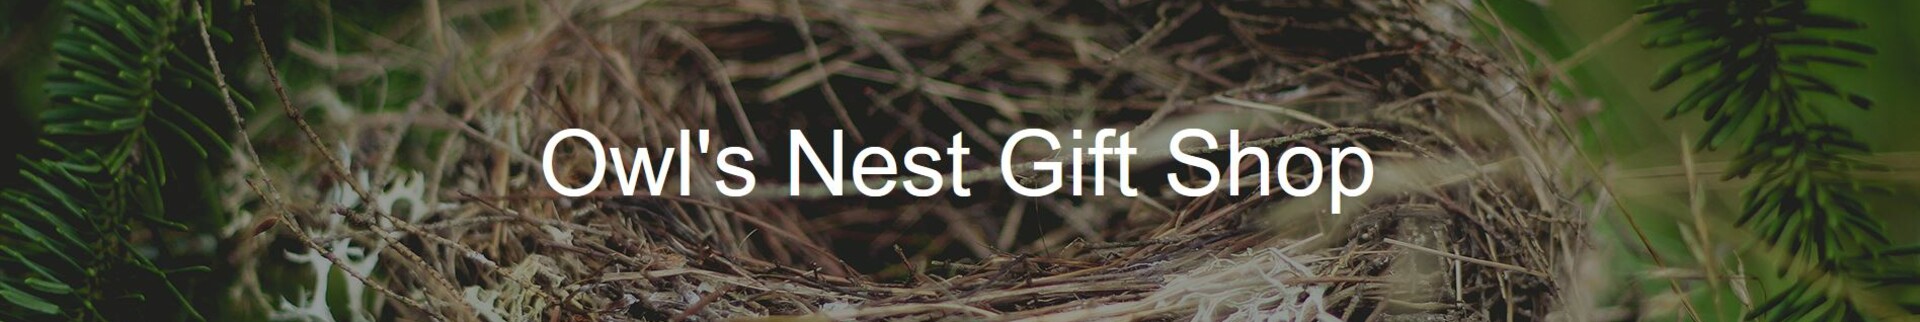 Owl's Nest's banner image.